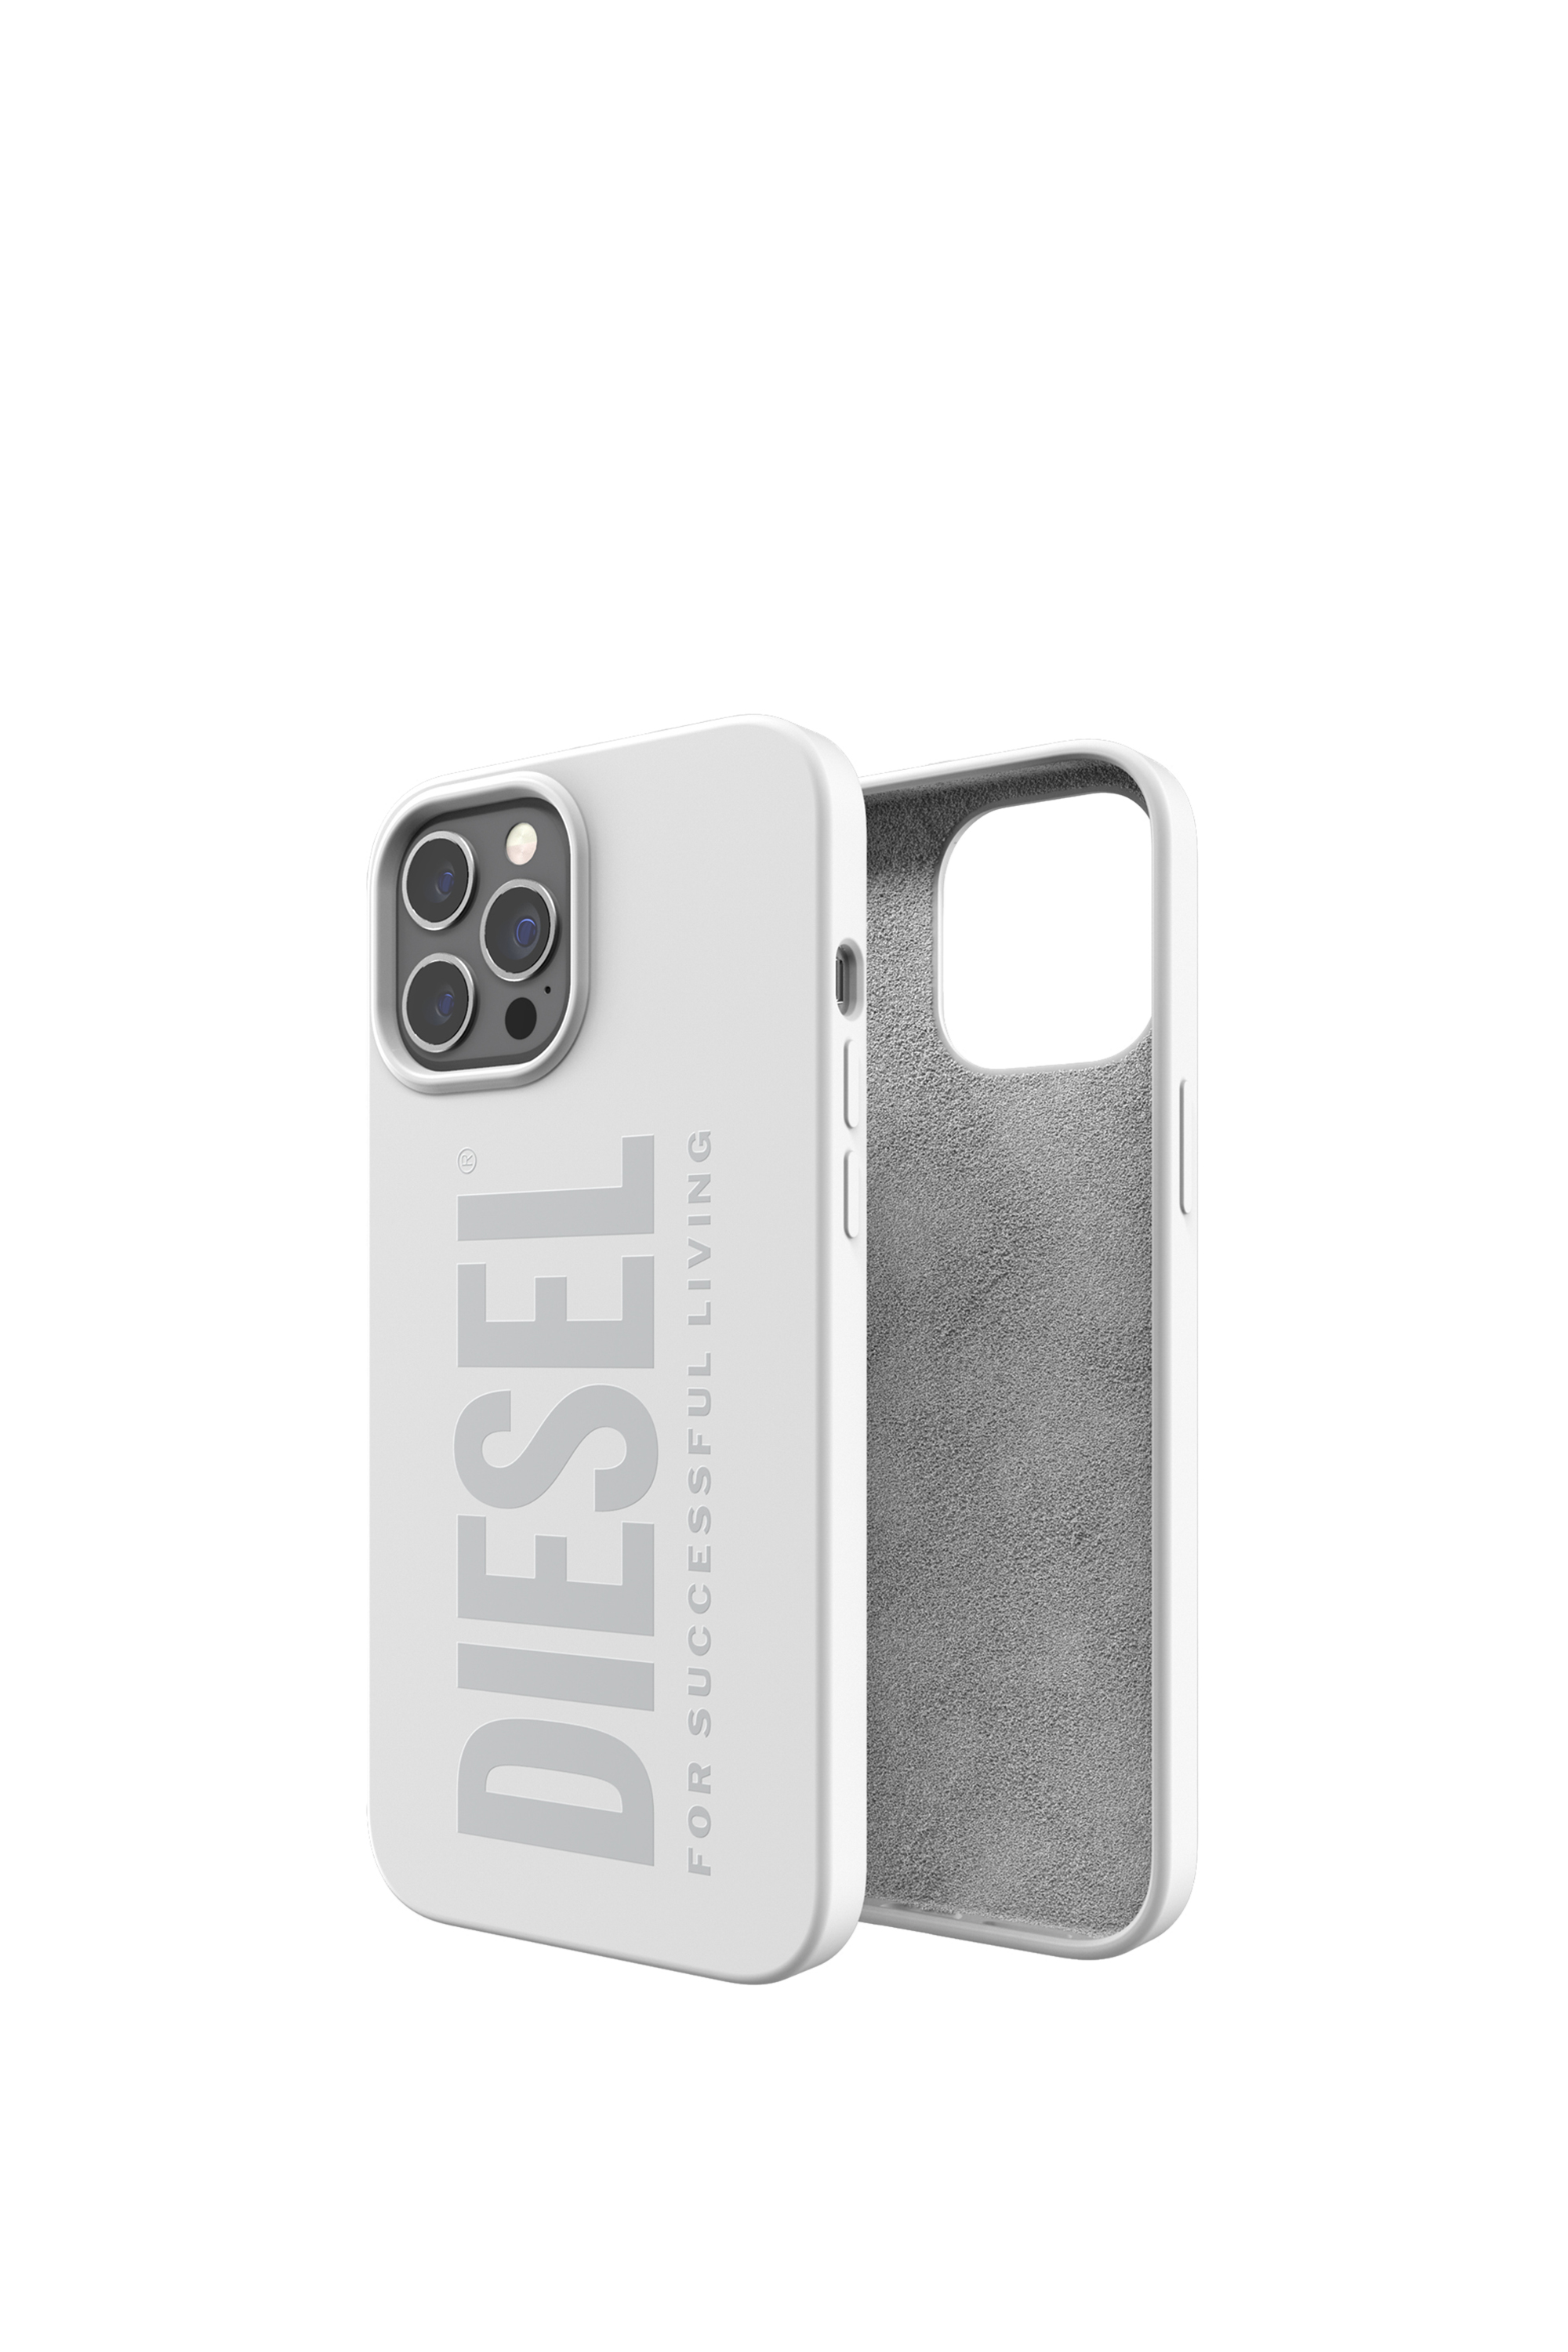 Diesel - 44283, White - Image 1